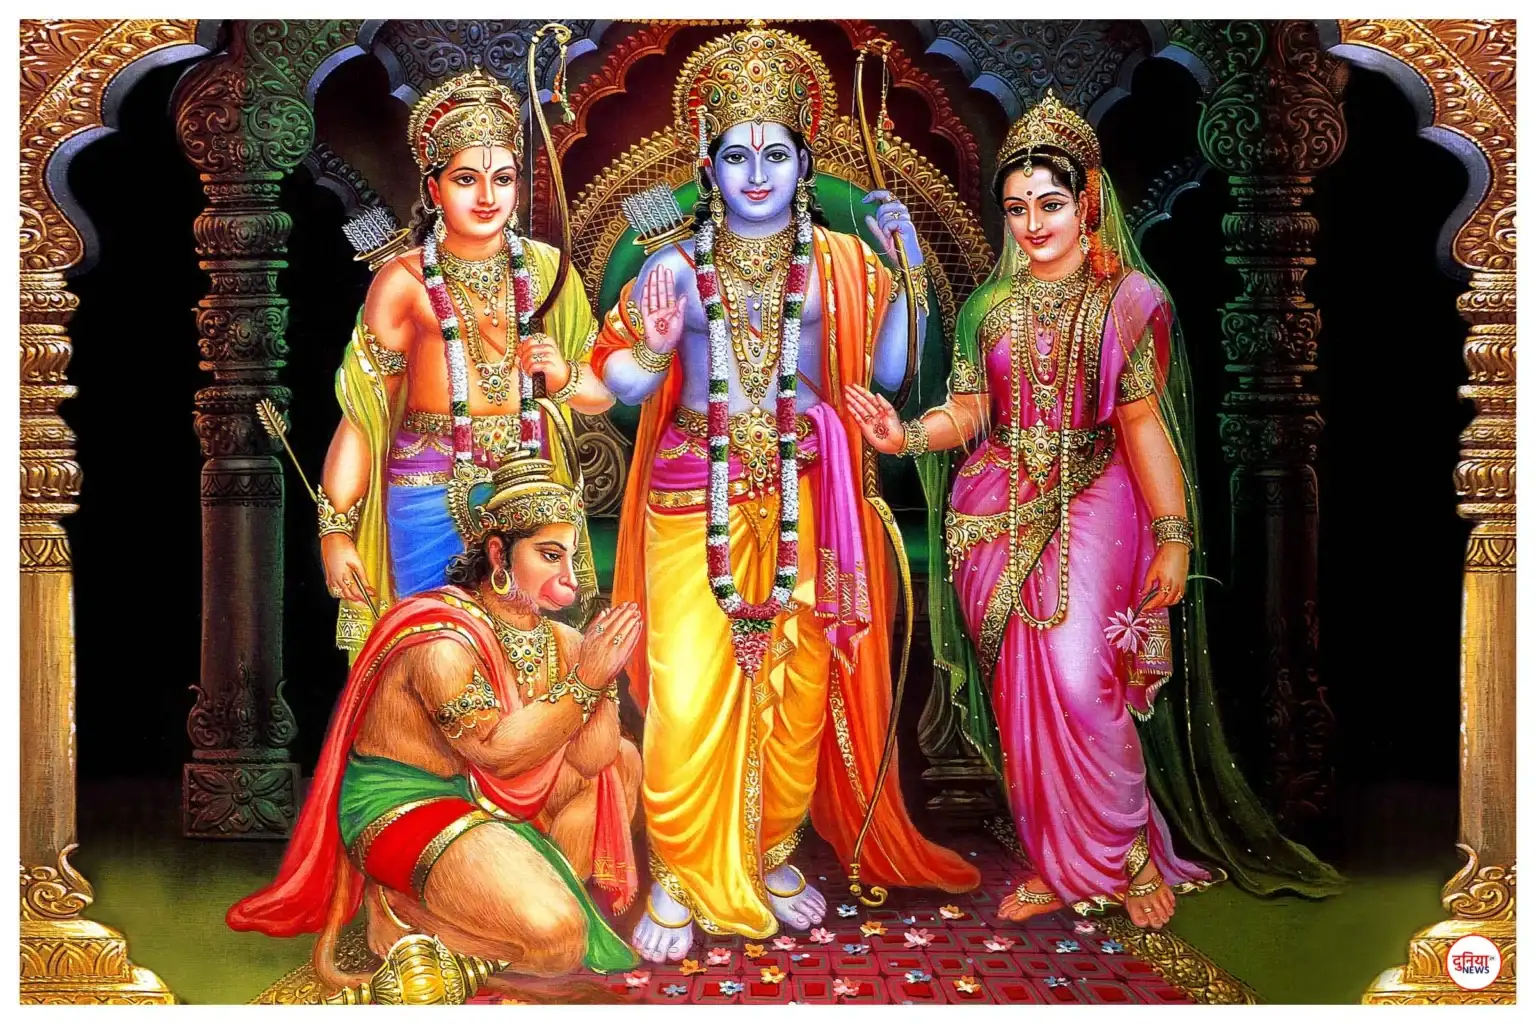 Best Ram Darbar Photo: राम दरबार की सर्वश्रेष्ठ तस्वीरें वॉलपेपर के रूप में डाउनलोड करें राम दरबार की तस्वीरें
